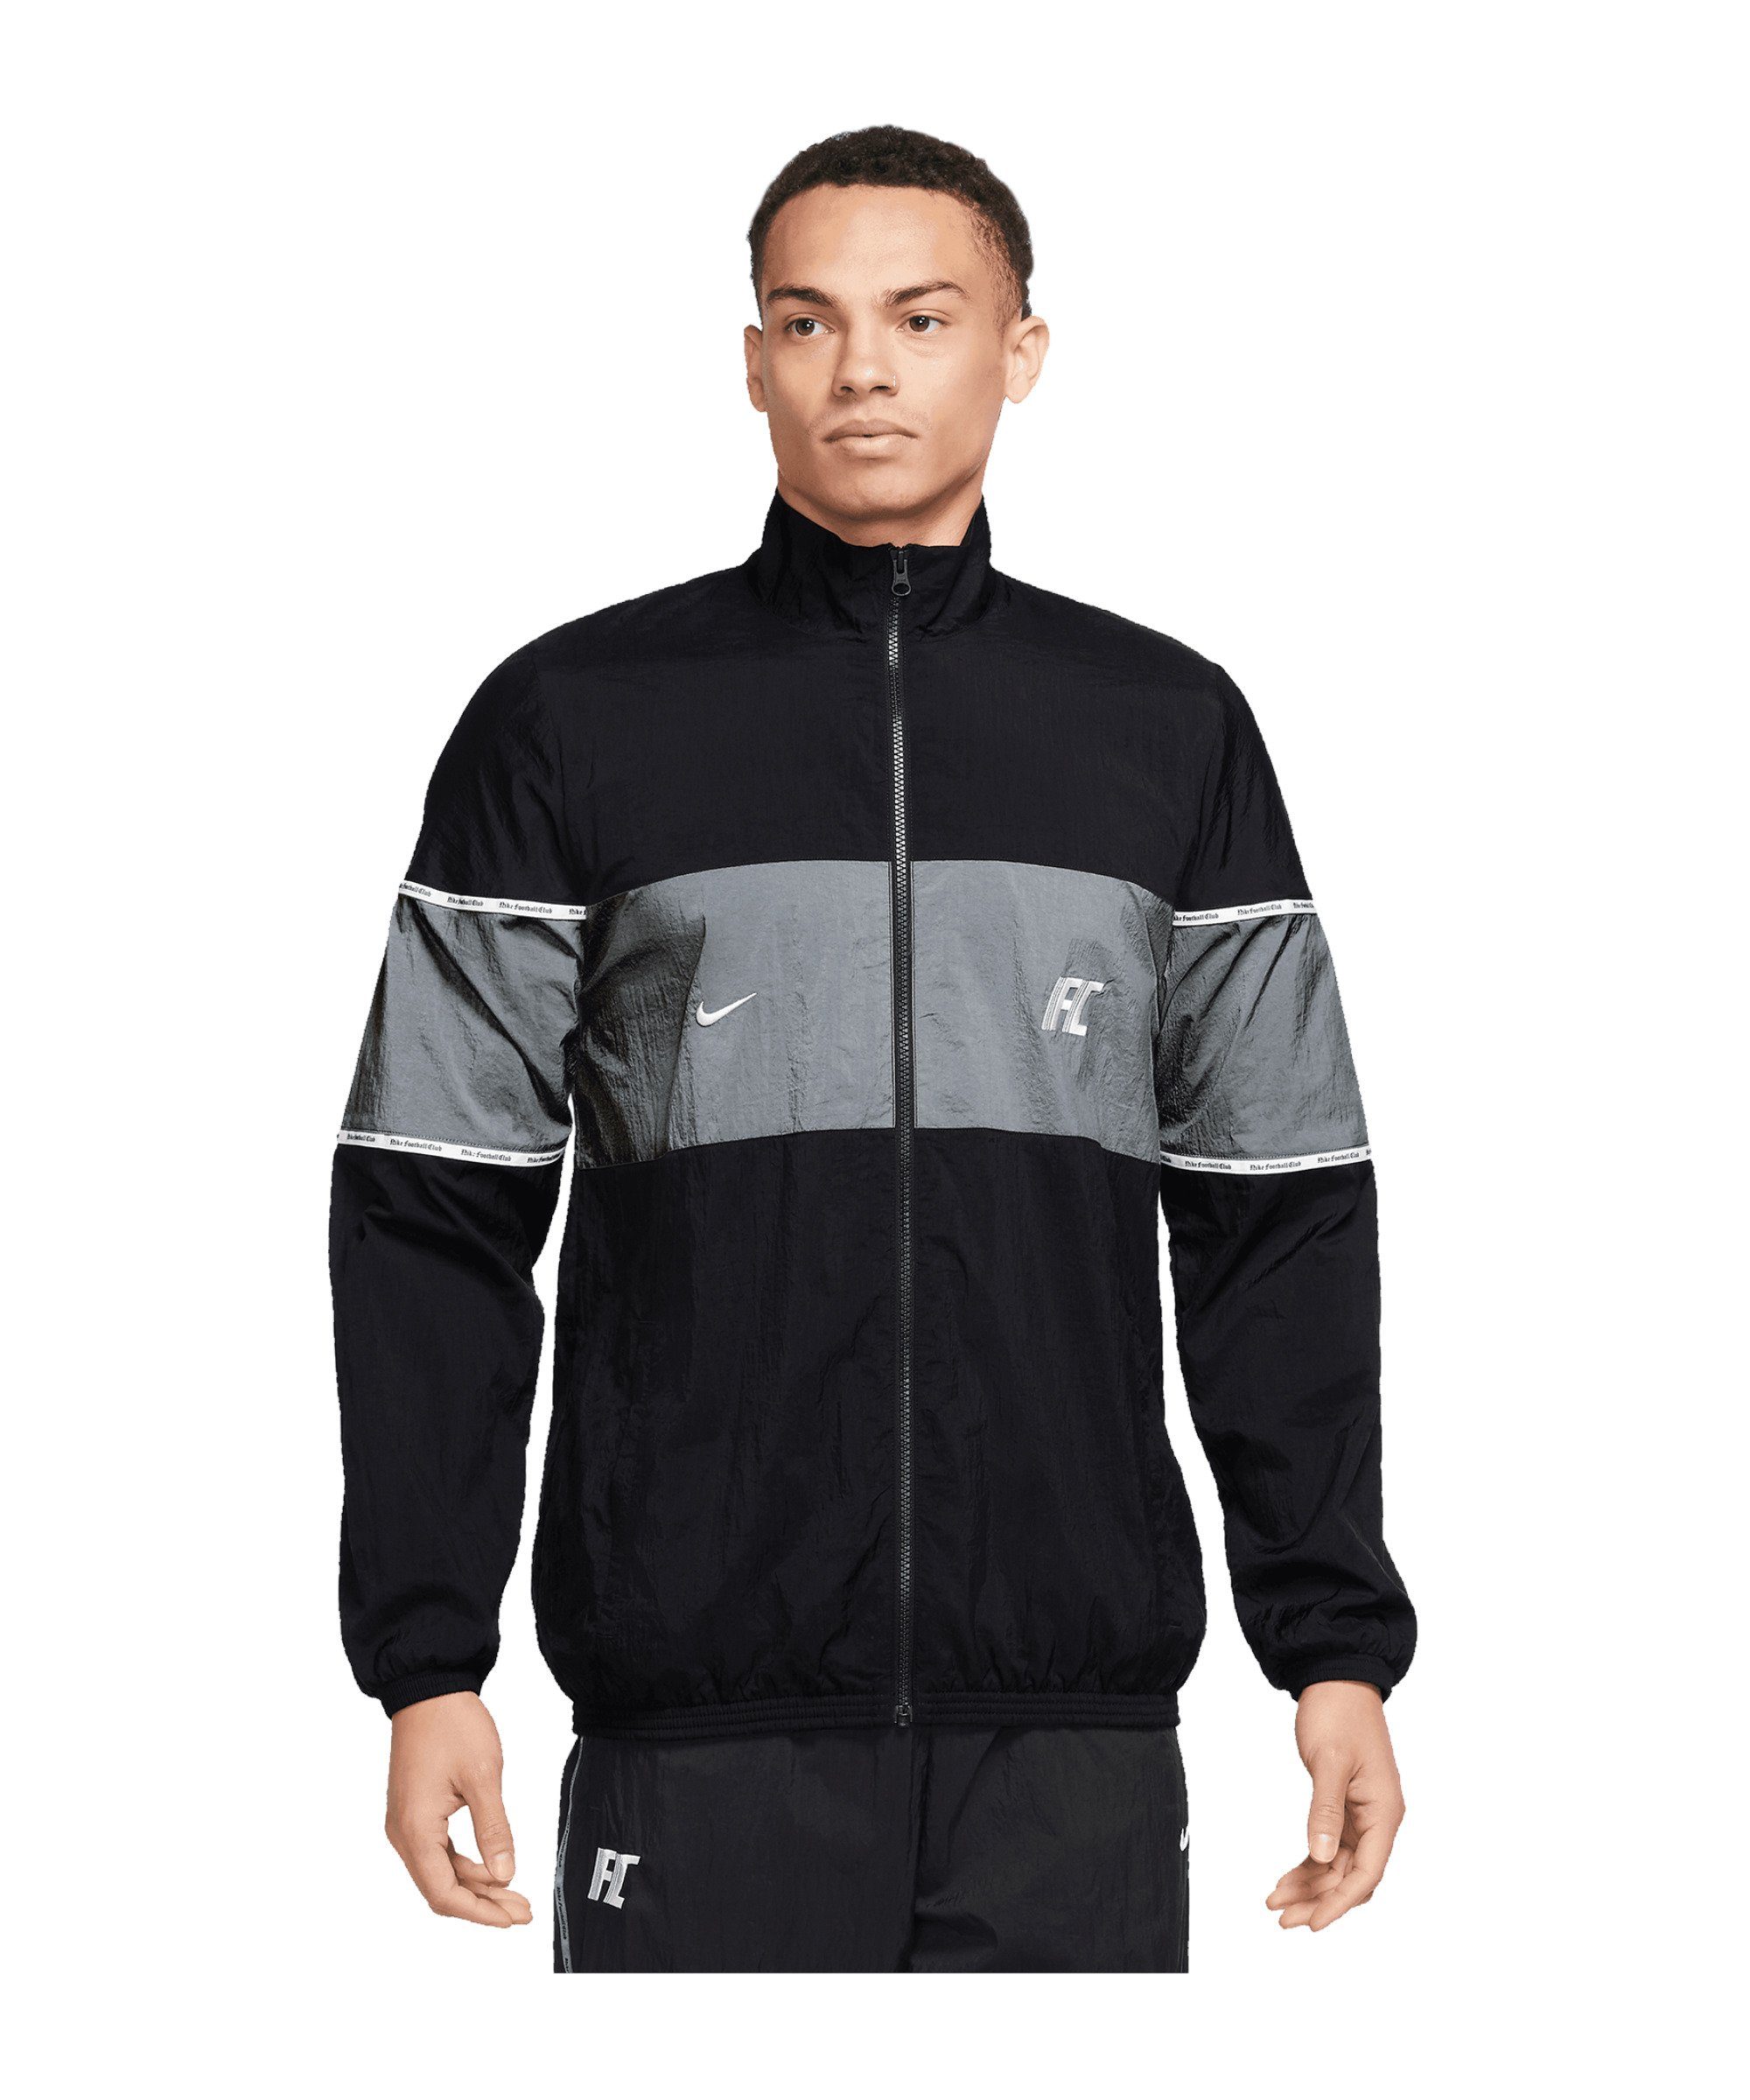 Repel Sportswear Jacke F.C. Sweatjacke Nike